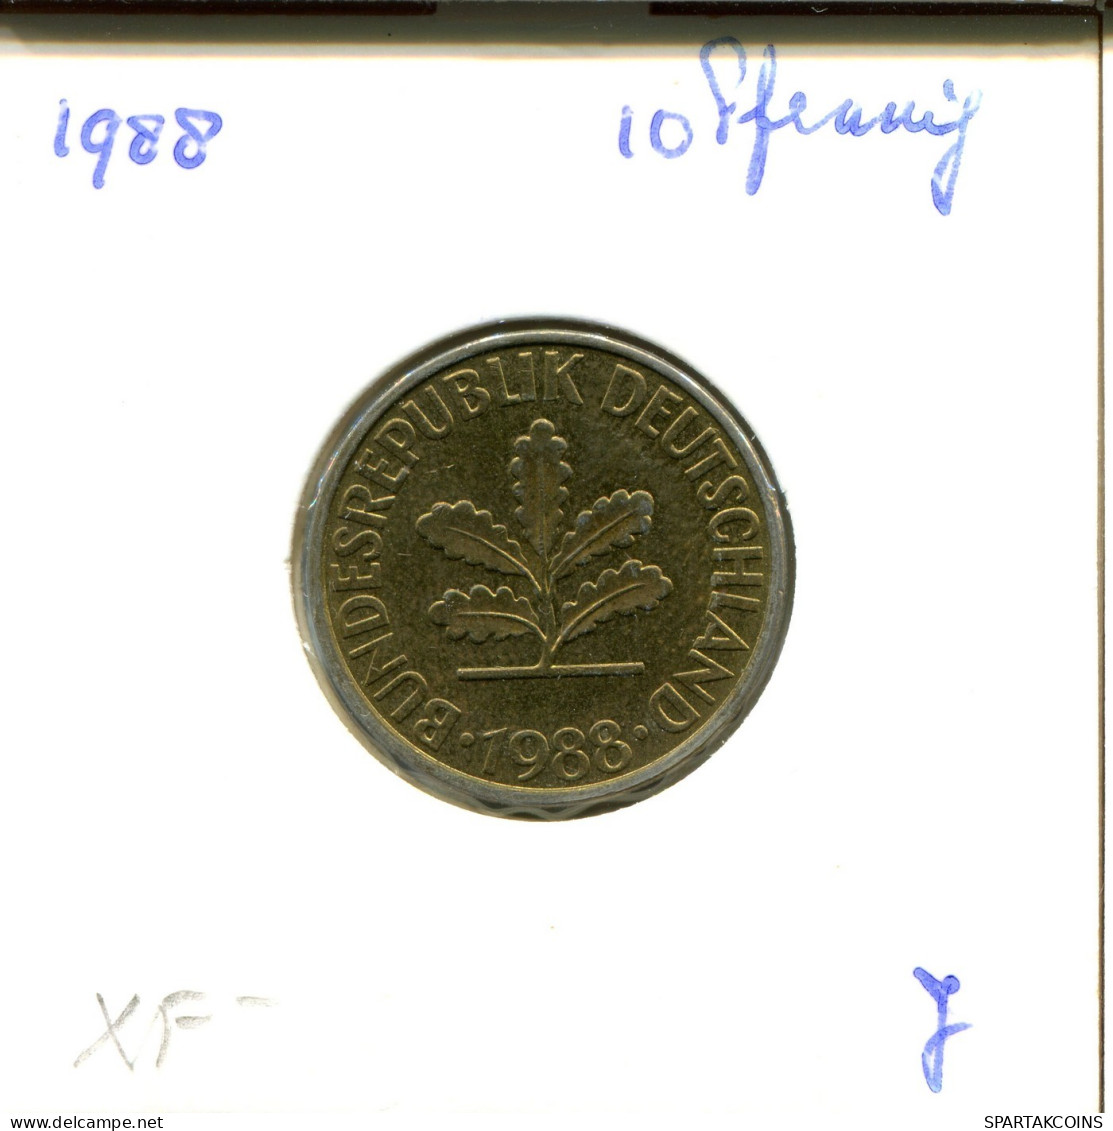 10 PFENNIG 1988 J WEST & UNIFIED GERMANY Coin #DA947.U.A - 10 Pfennig